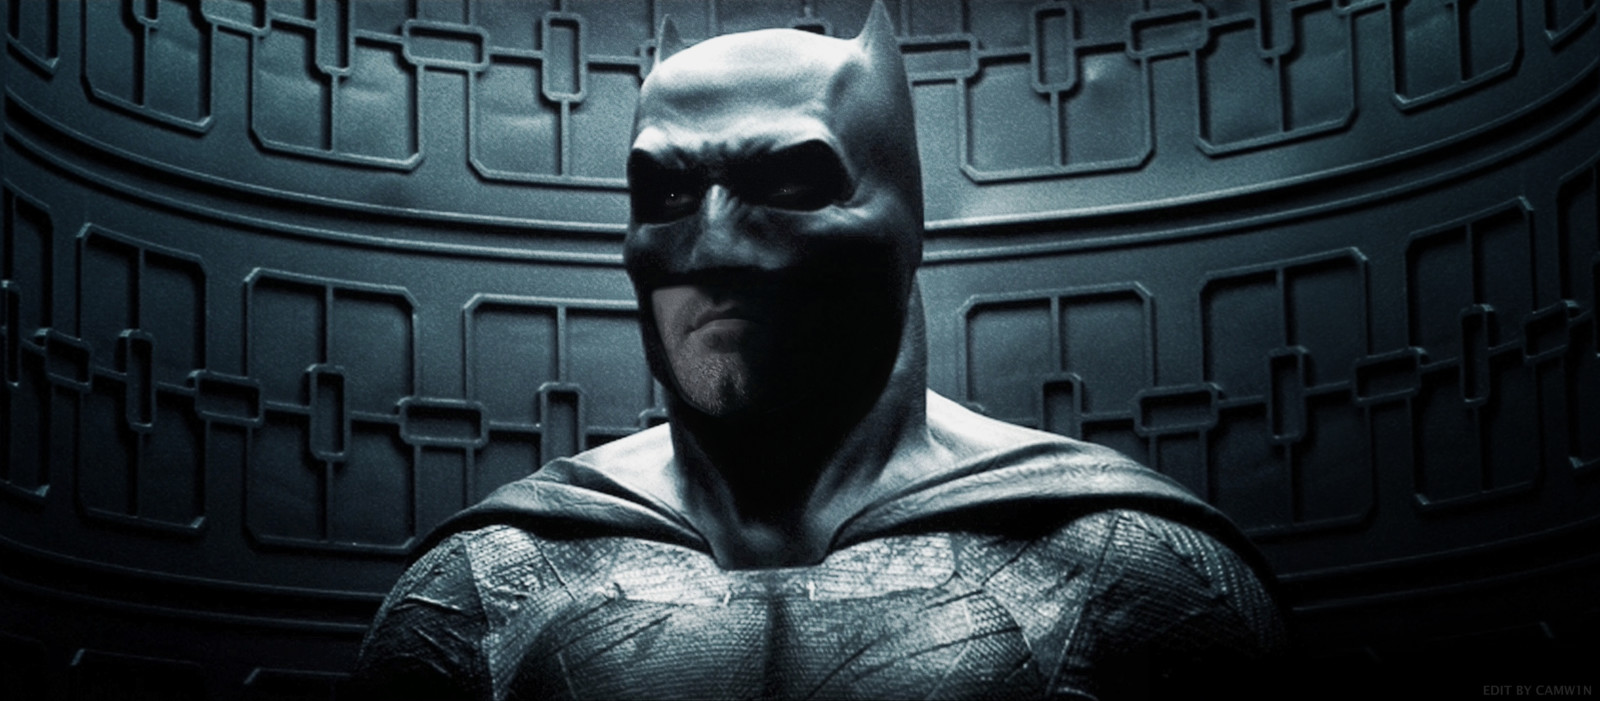 Batman v Superman: Dawn of Justice instal the new for mac